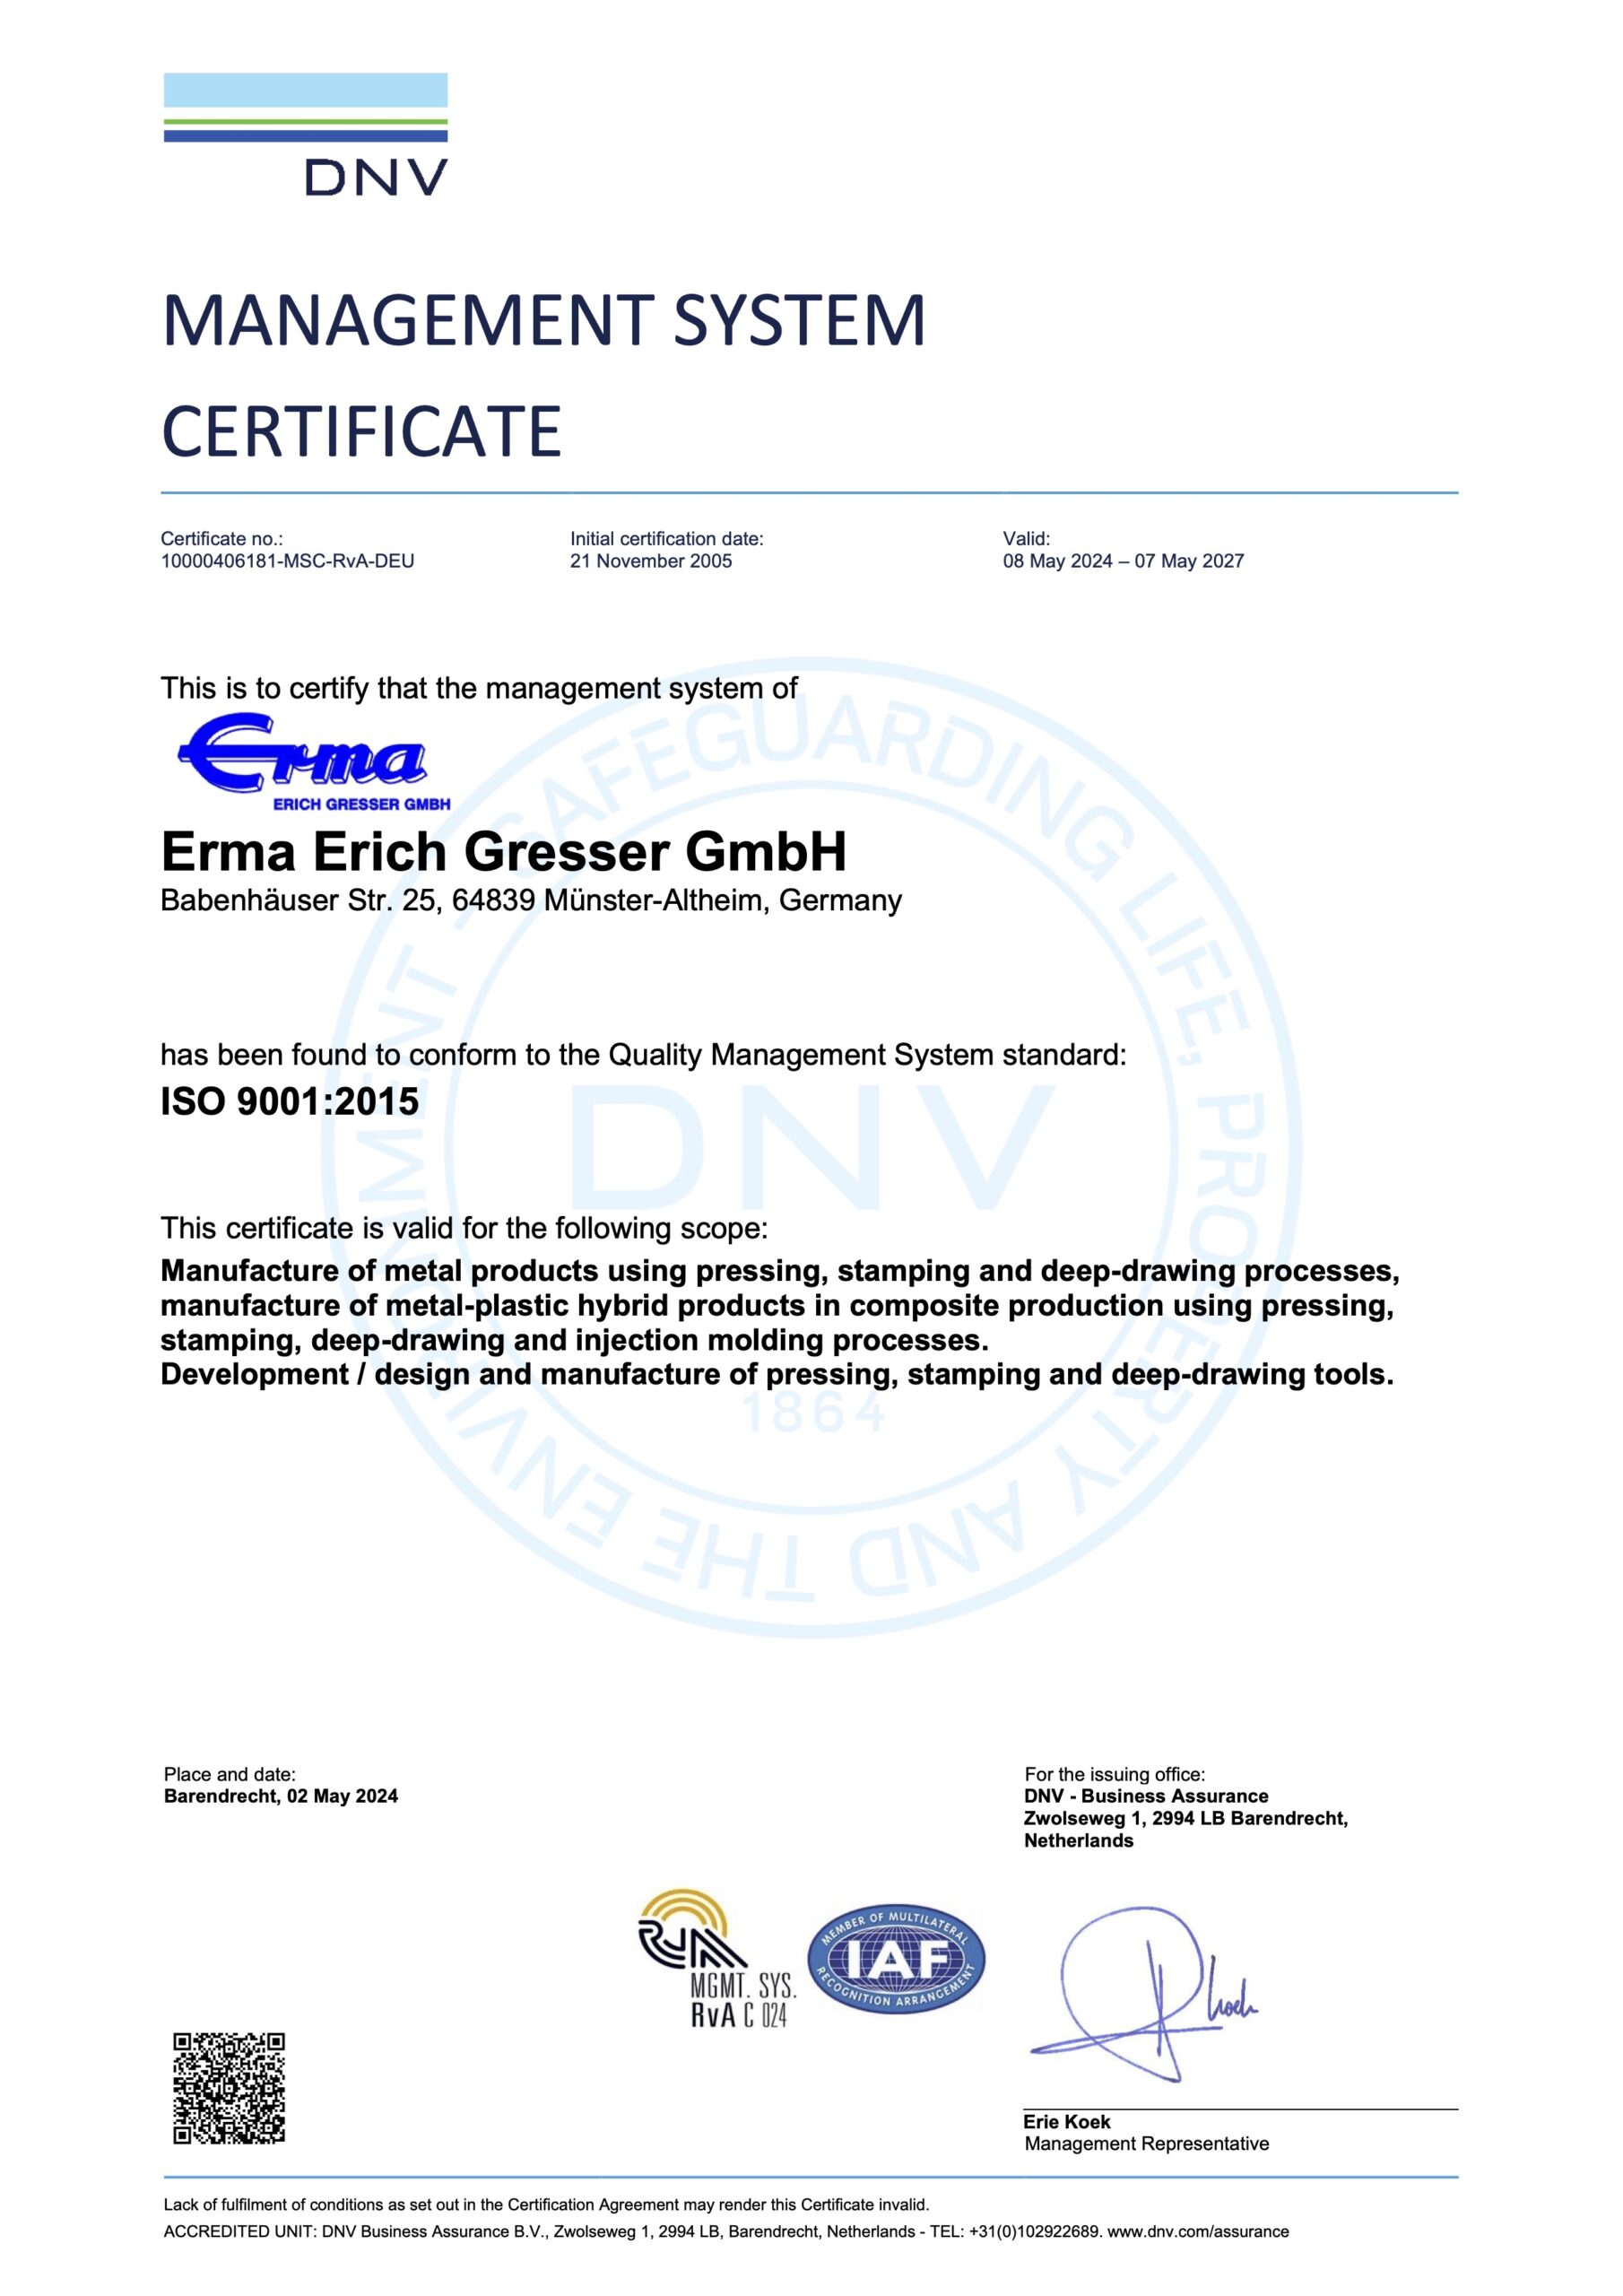 Managementsystem-Zertifikat für Erma Erich Gresser GmbH, das die Konformität mit ISO 9001:2015 für die Herstellung von Metallprodukten und damit verbundenen Prozessen bescheinigt. Dieses Zertifikat unterstreicht ihr Engagement für die Qualitätssicherung im gesamten Betrieb.